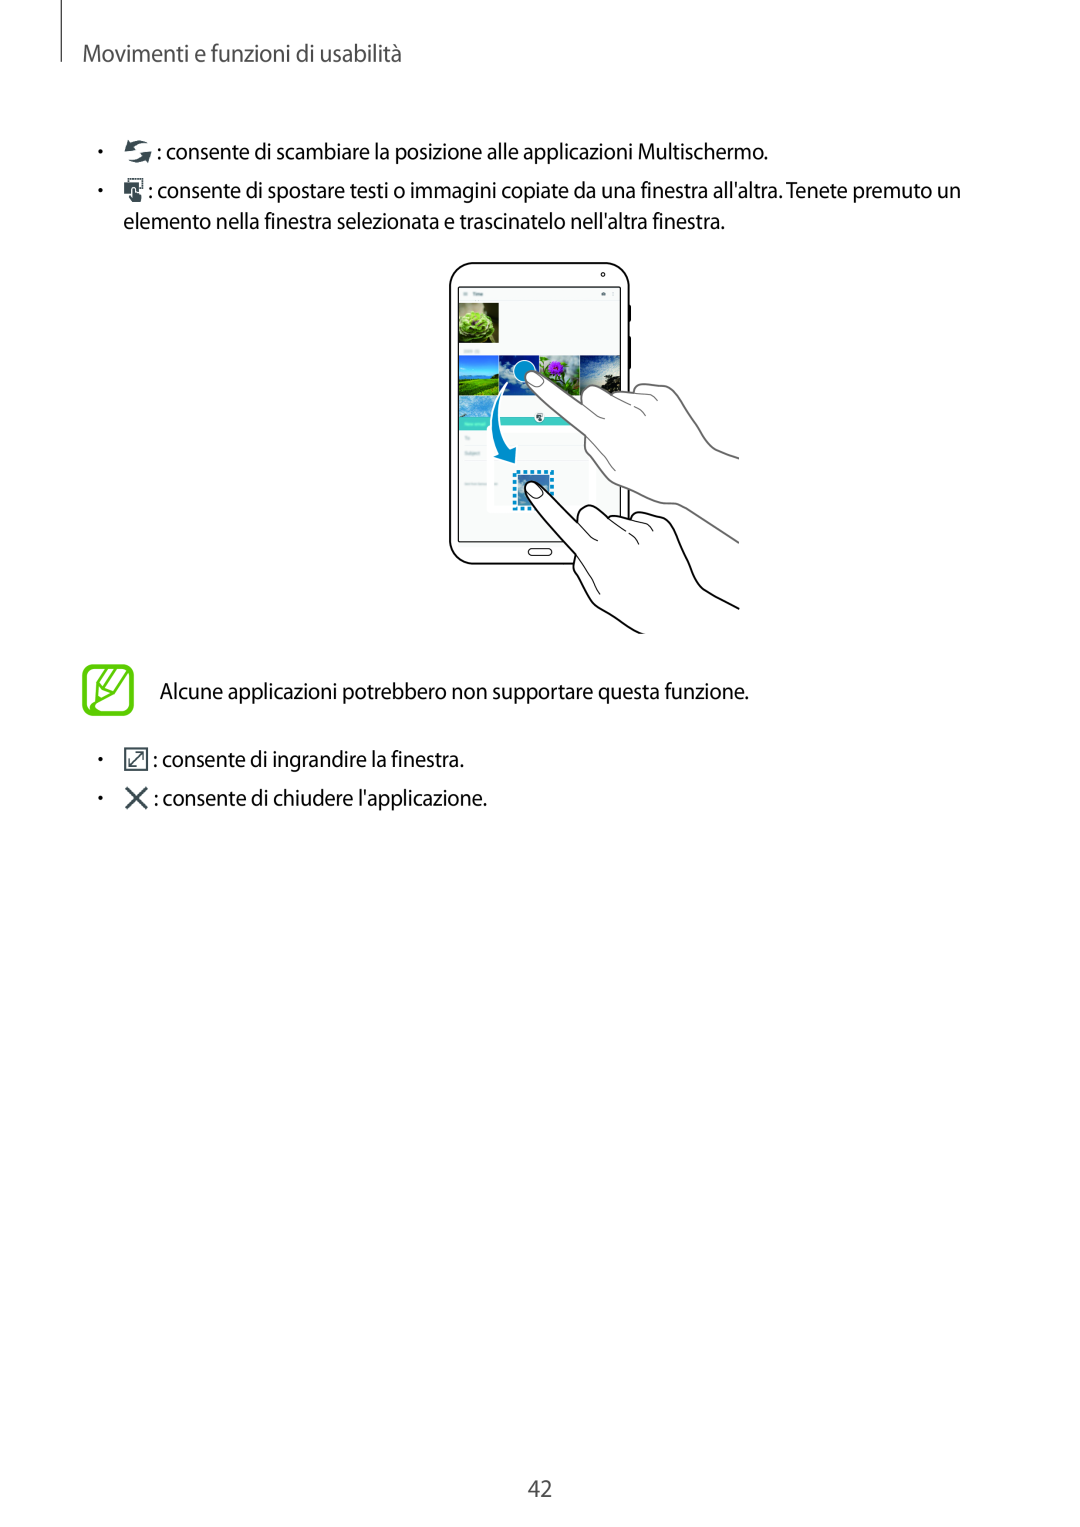 Samsung SM-T700NTSAXEO Movimenti e funzioni di usabilità, Alcune applicazioni potrebbero non supportare questa funzione 